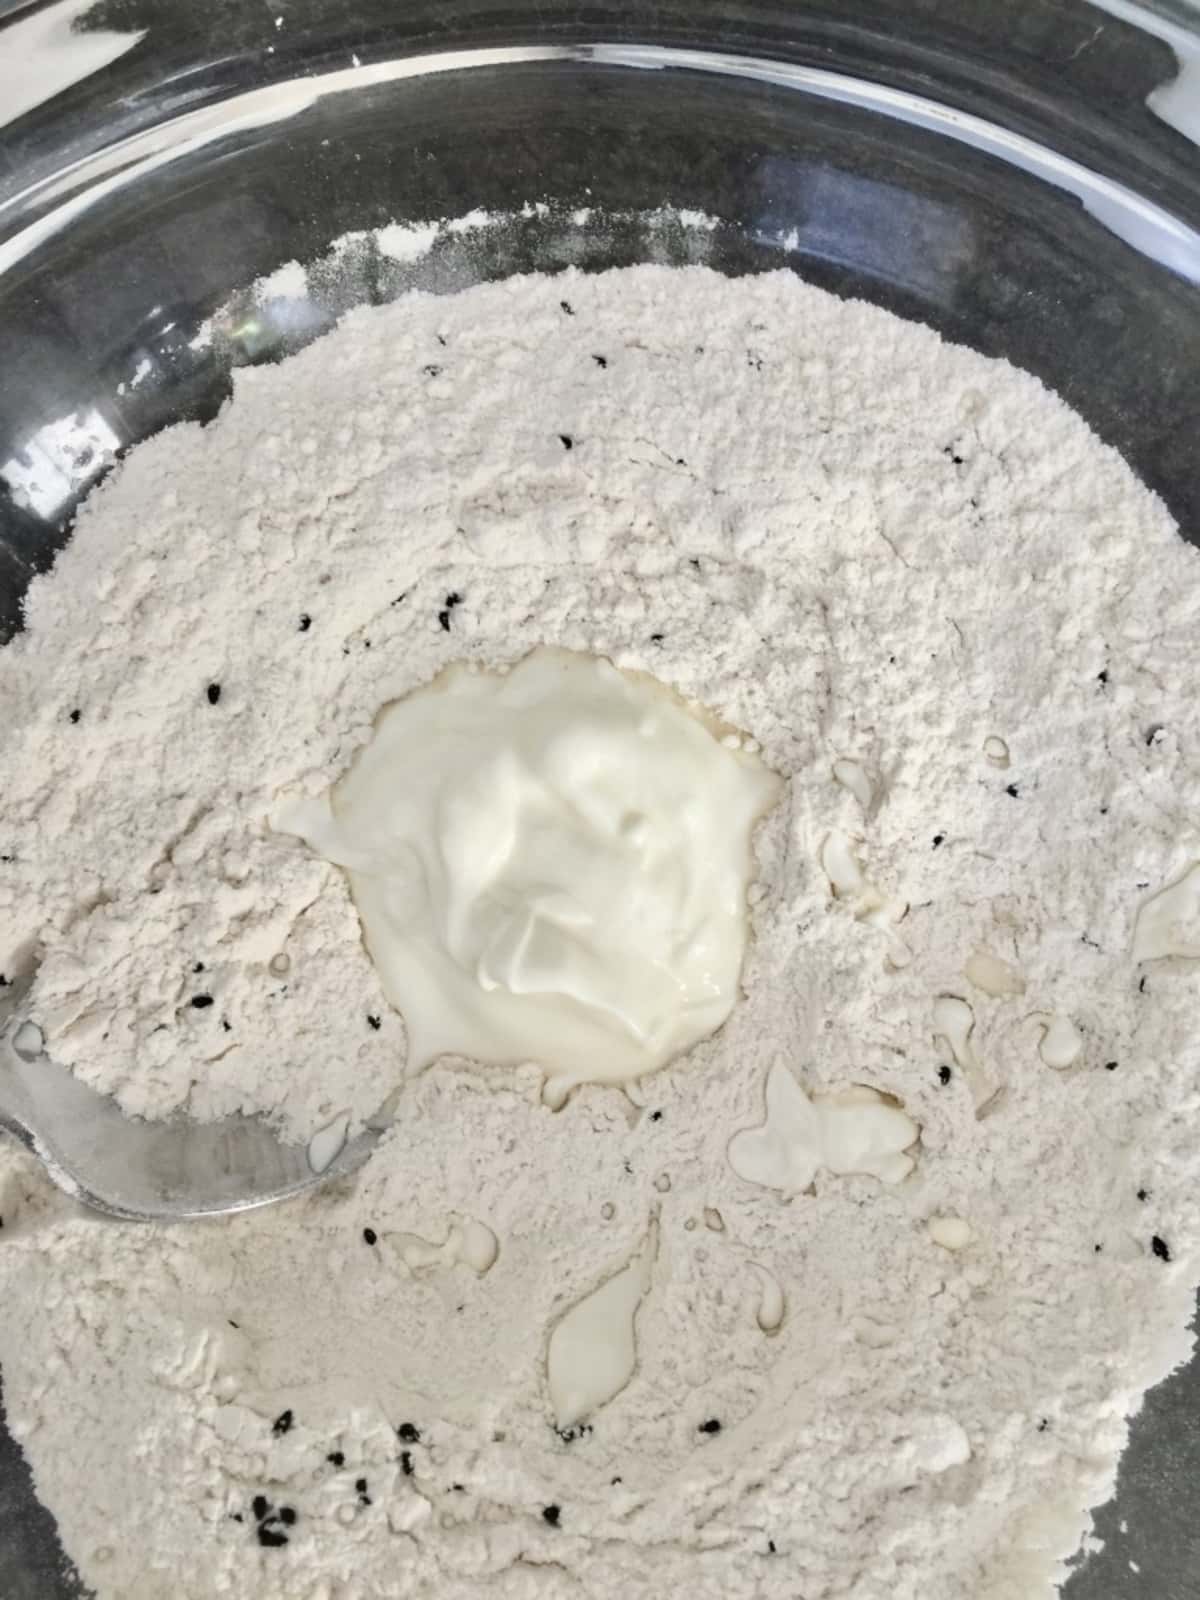 Flour & black nigella seeds in a bowl with dollop of yogurt.